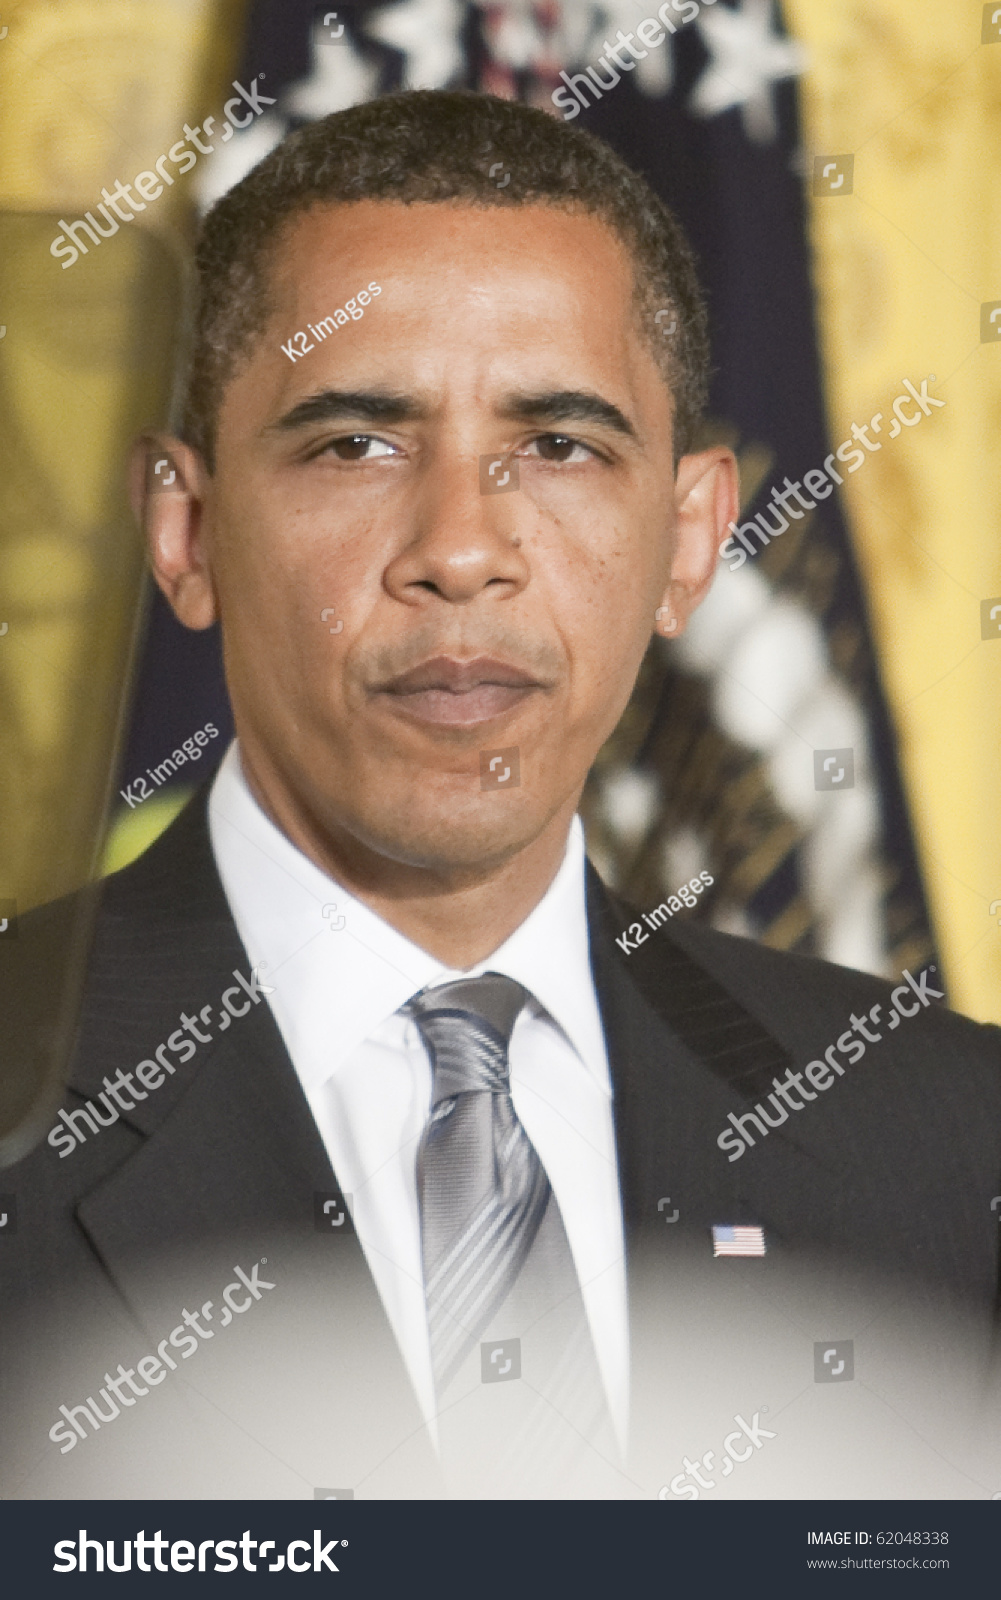 华盛顿--6月29日:美国总统巴拉克奥巴马(Barac